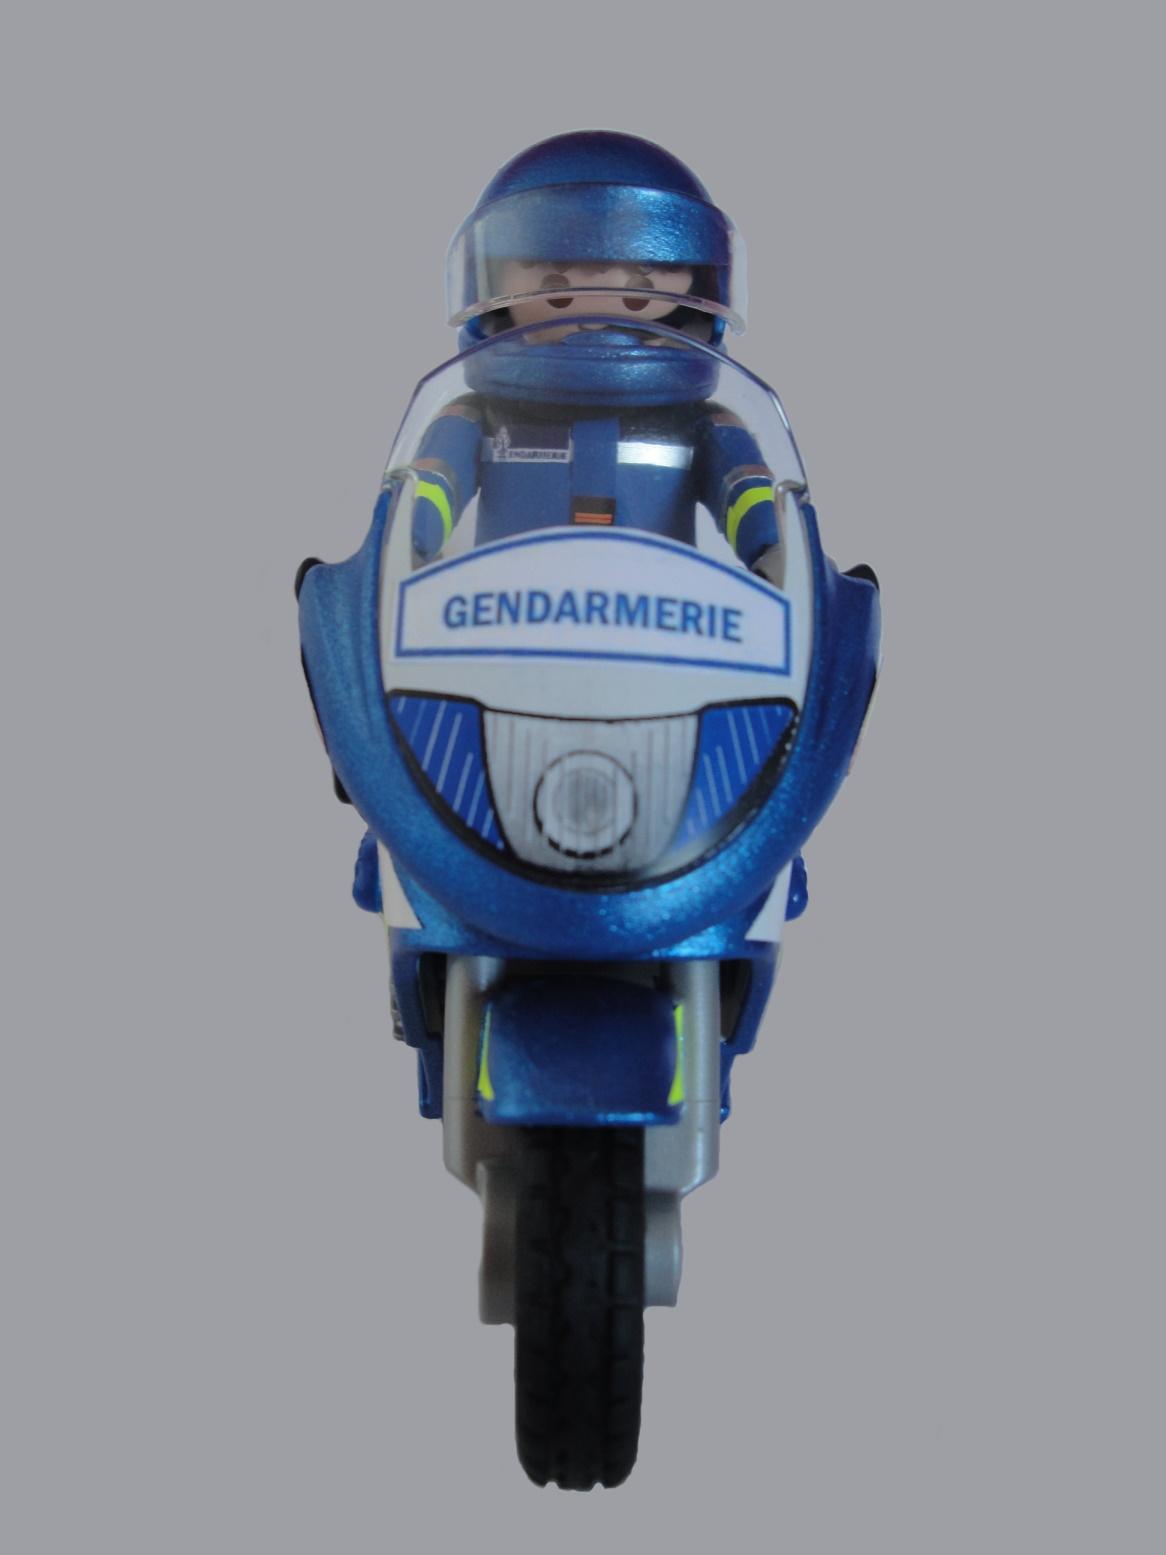 Playmobil moto tráfico Gendarmerie francesa elige hombre o mujer